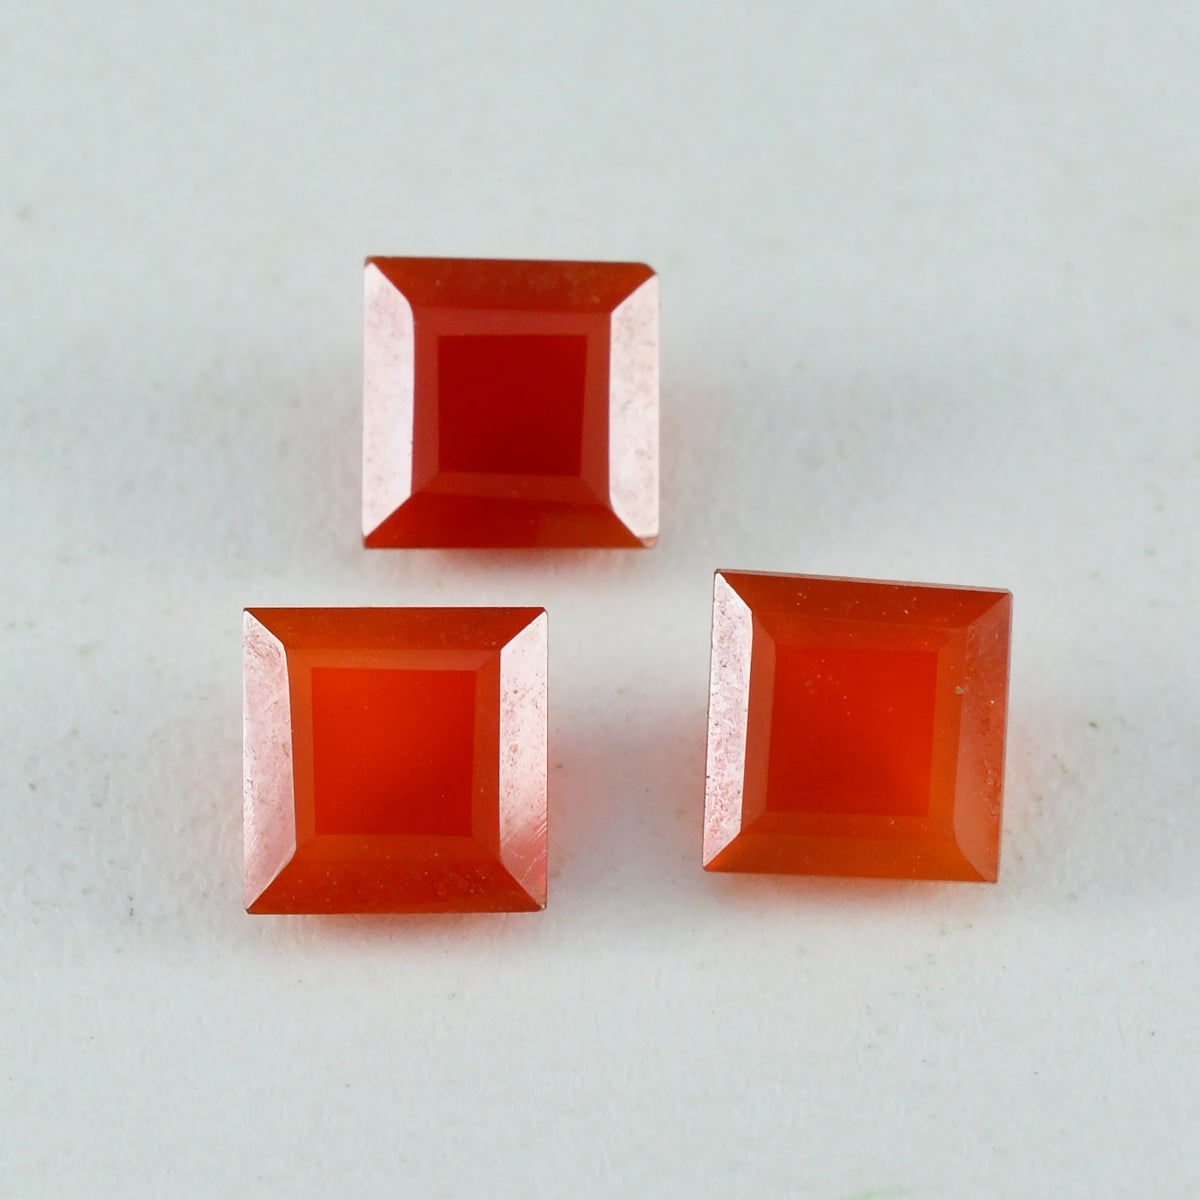 Riyogems 1 Stück echter roter Onyx, facettiert, 8 x 8 mm, quadratische Form, erstaunliche Qualität, loser Edelstein